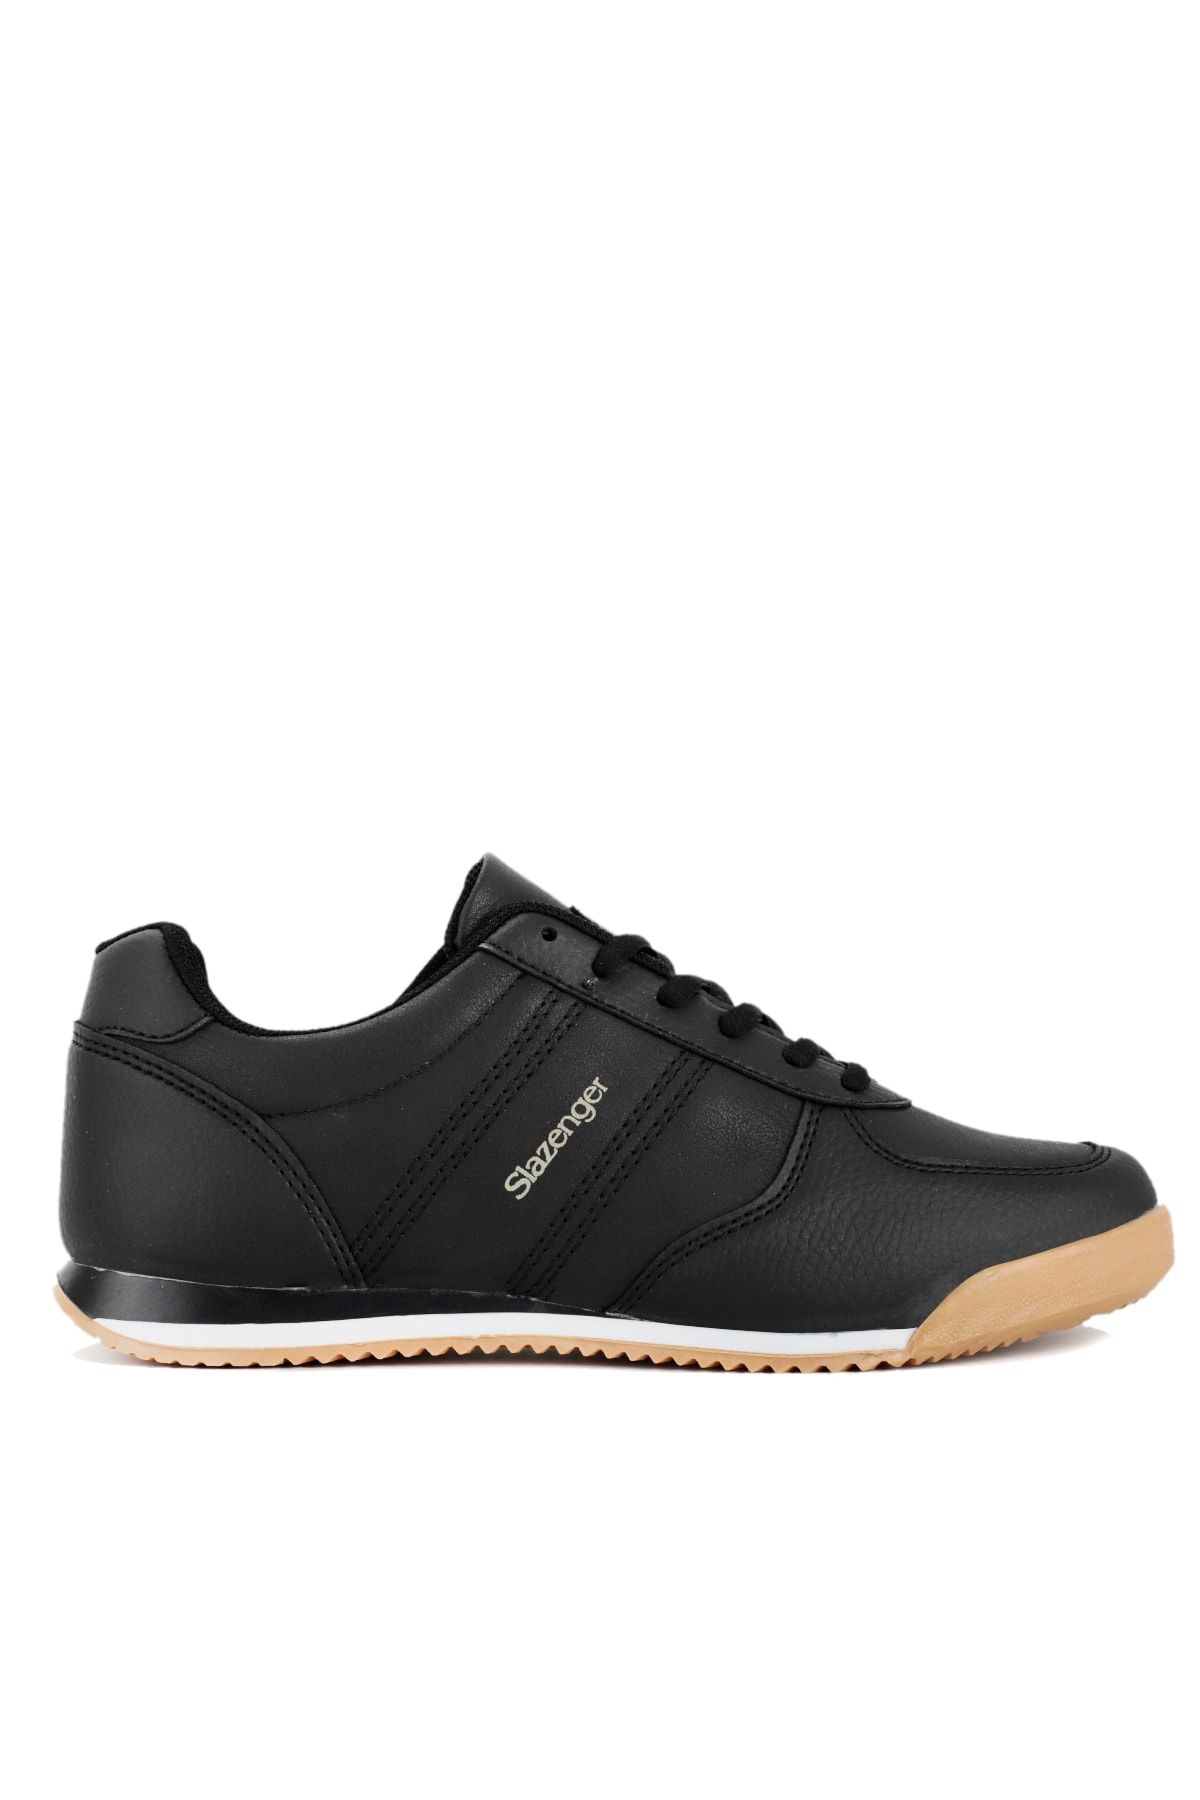 Slazenger Offıcer I Sneaker Ayakkabı Siyah / Siyah